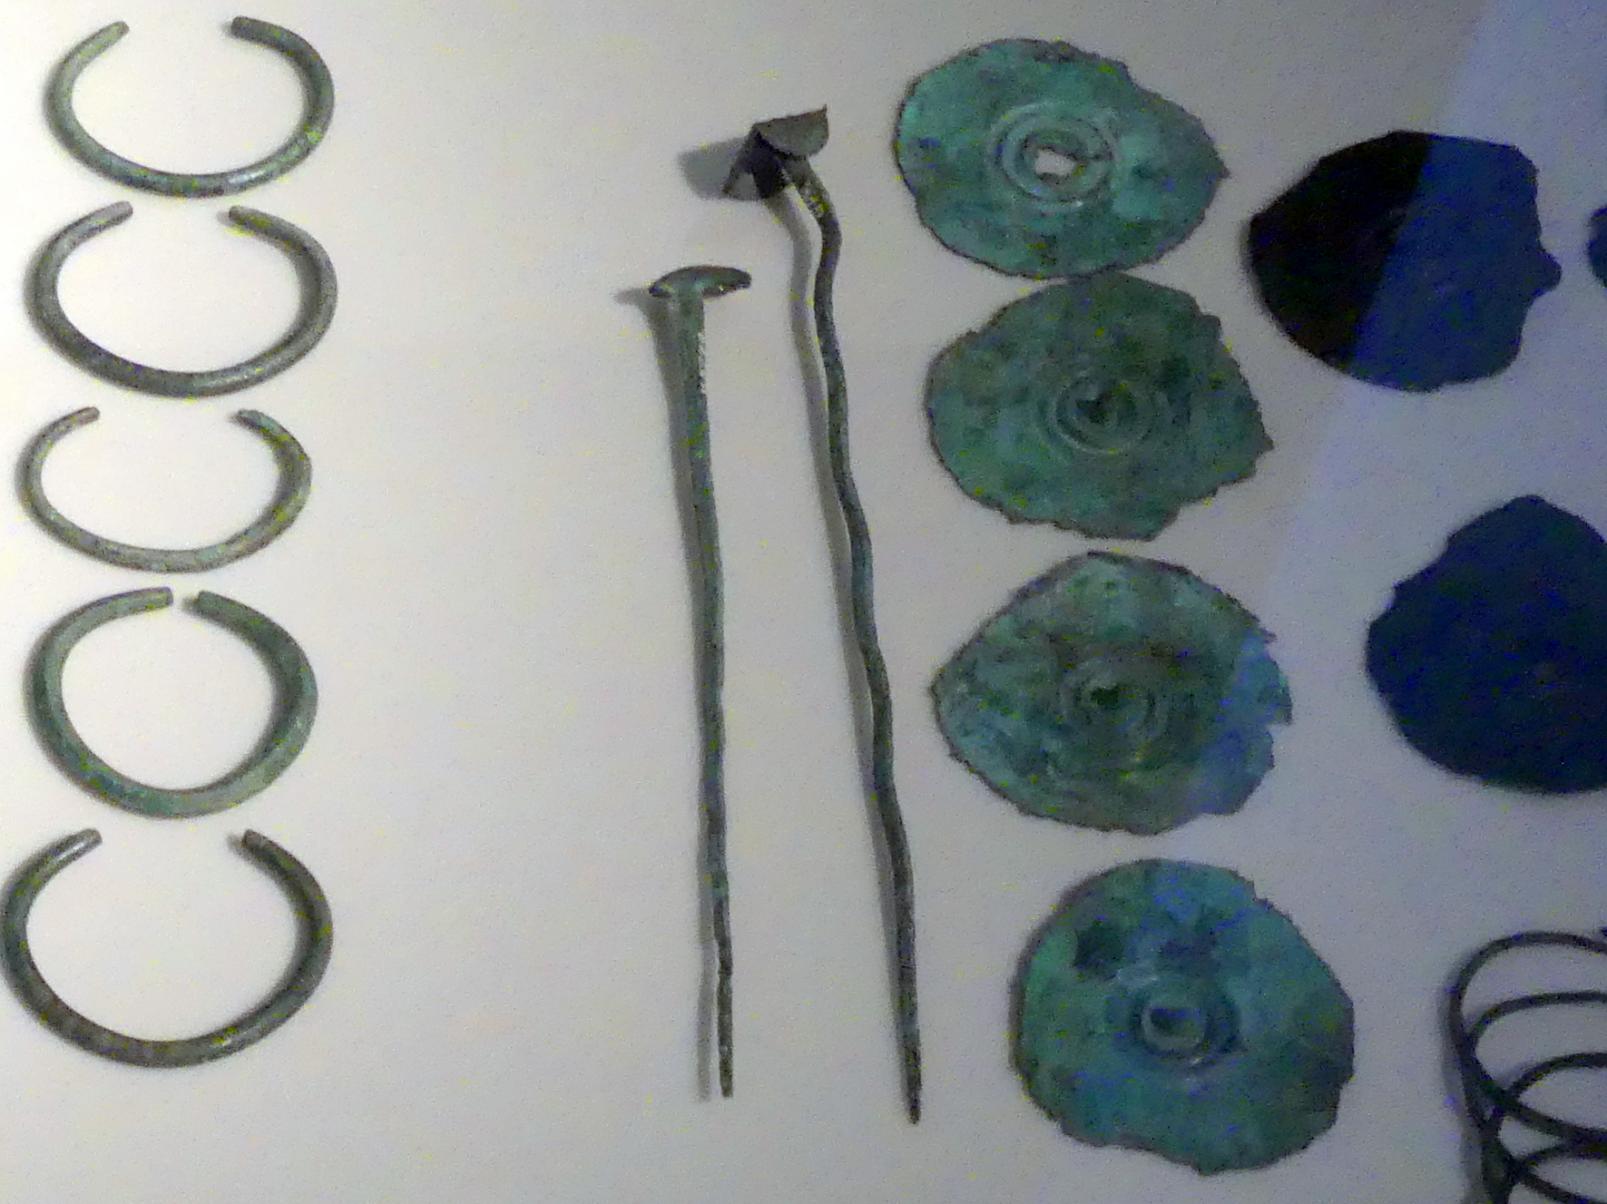 Stachelscheiben (Anhänger), Mittlere Bronzezeit, 3000 - 1300 v. Chr., 1600 - 1300 v. Chr., Bild 1/2